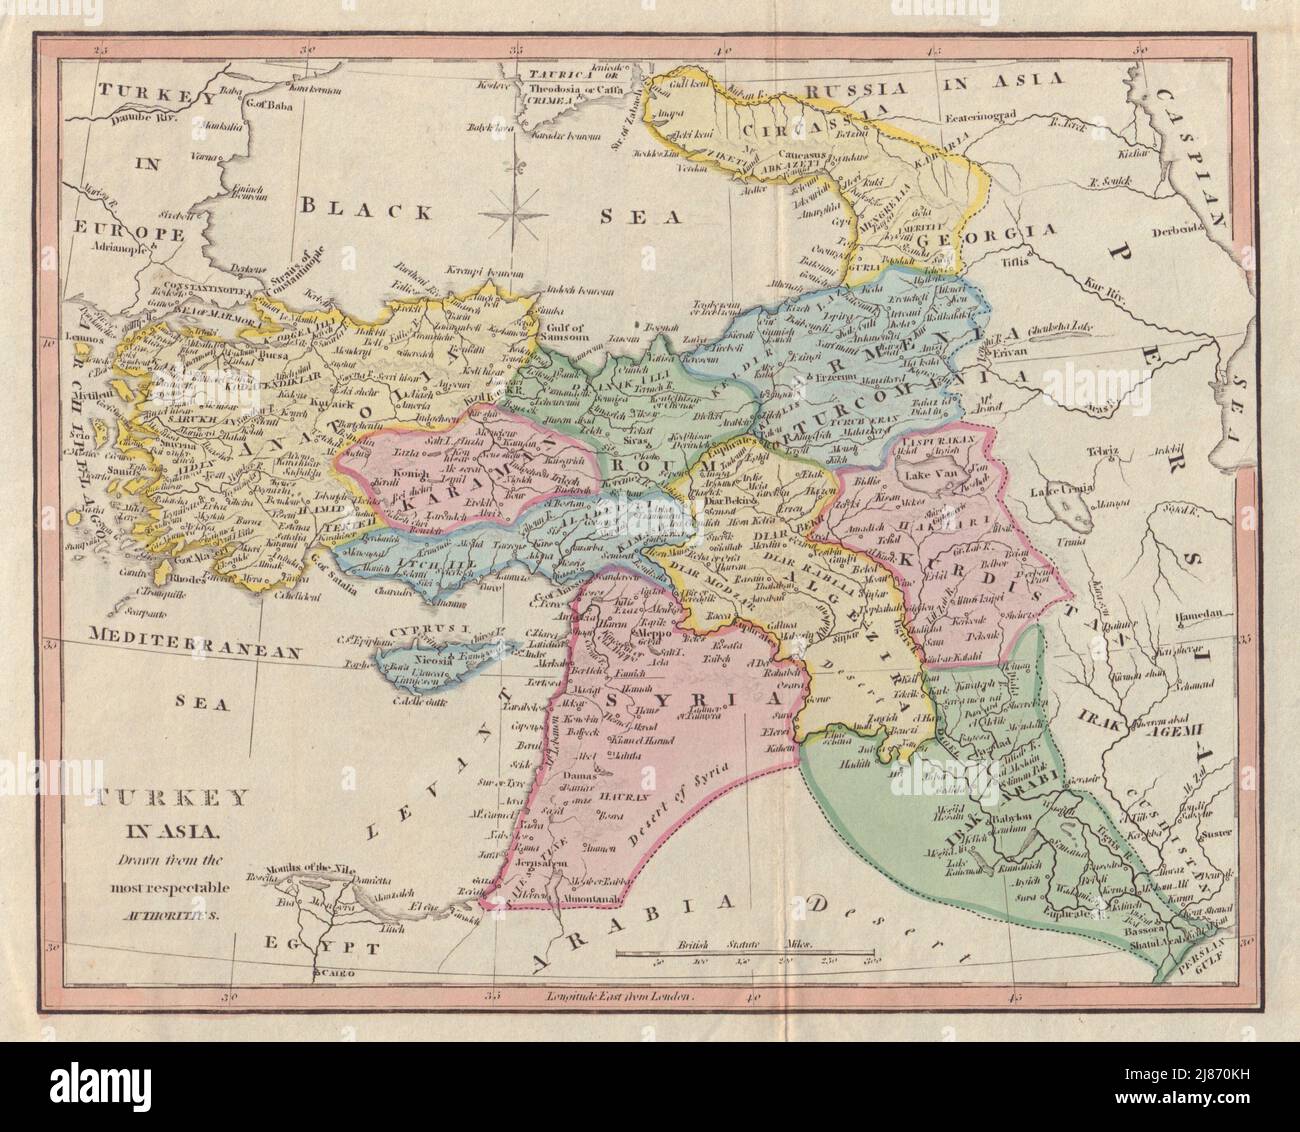 Turkey in Asia. Syria Georgia Iraq Palestine Armenia Kurdistan. COOKE 1817 map Stock Photo